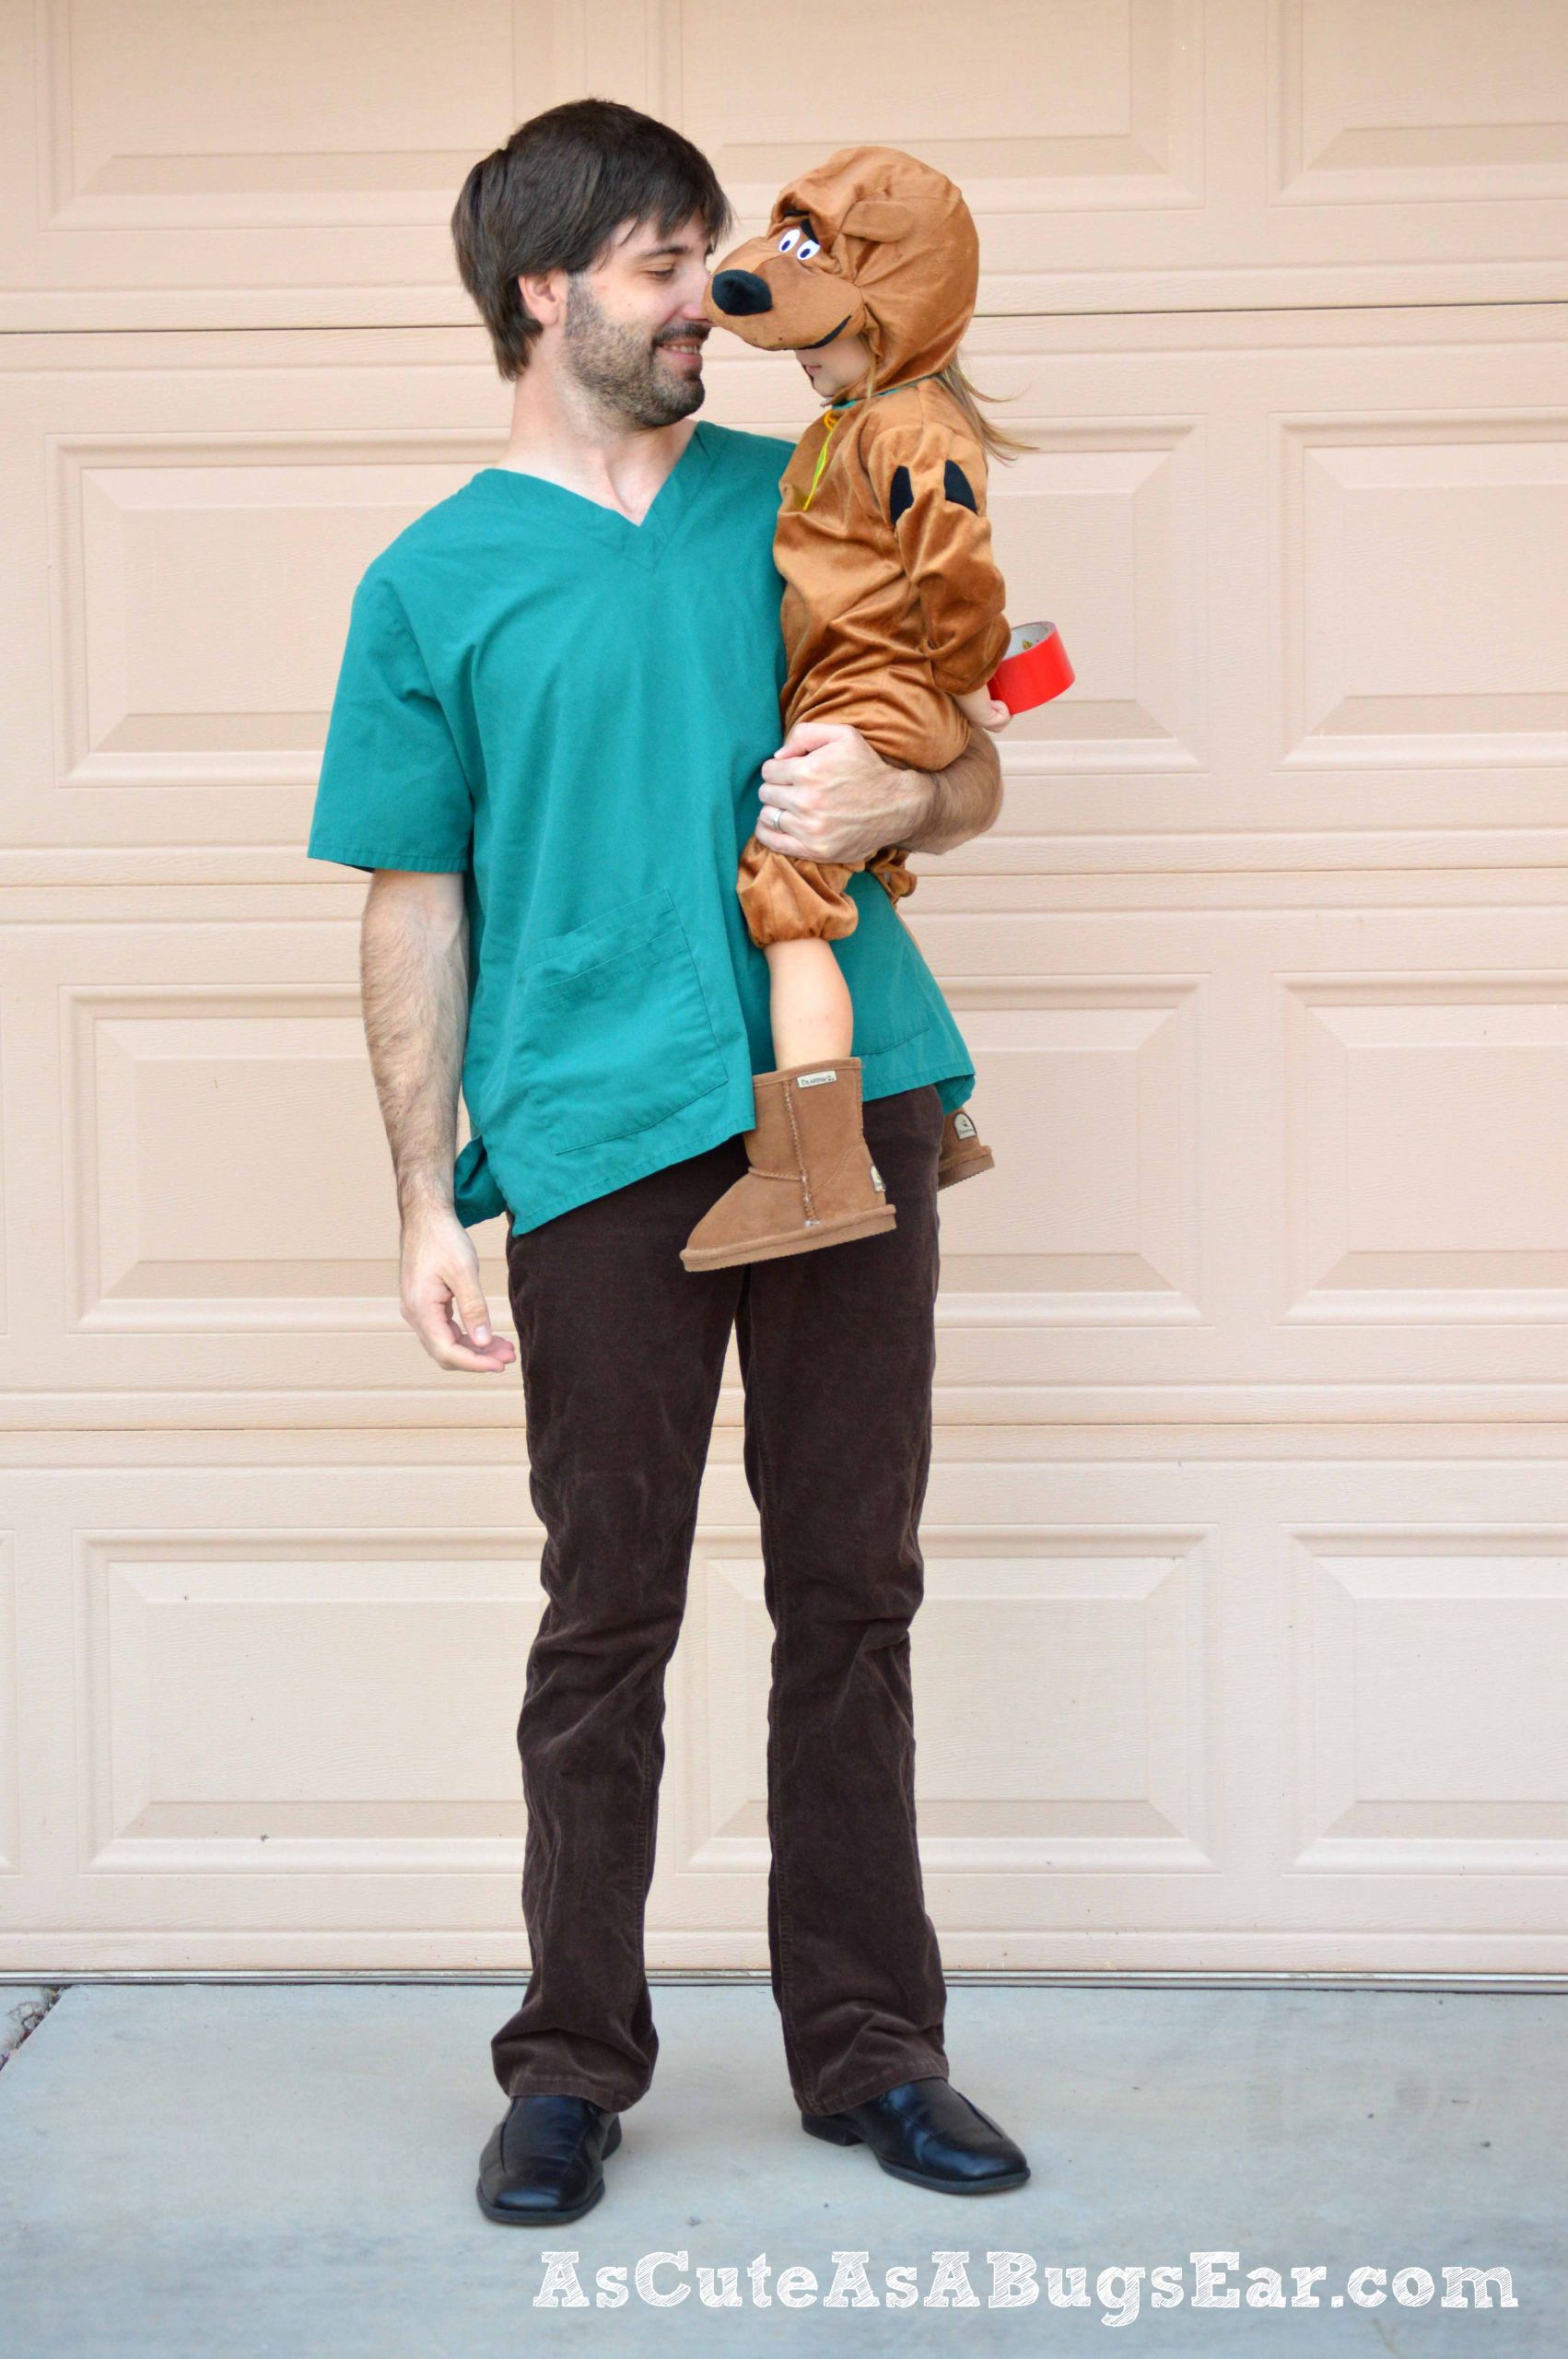 Scooby Doo Costume DIY
 DIY Shaggy & Scooby Doo Costume